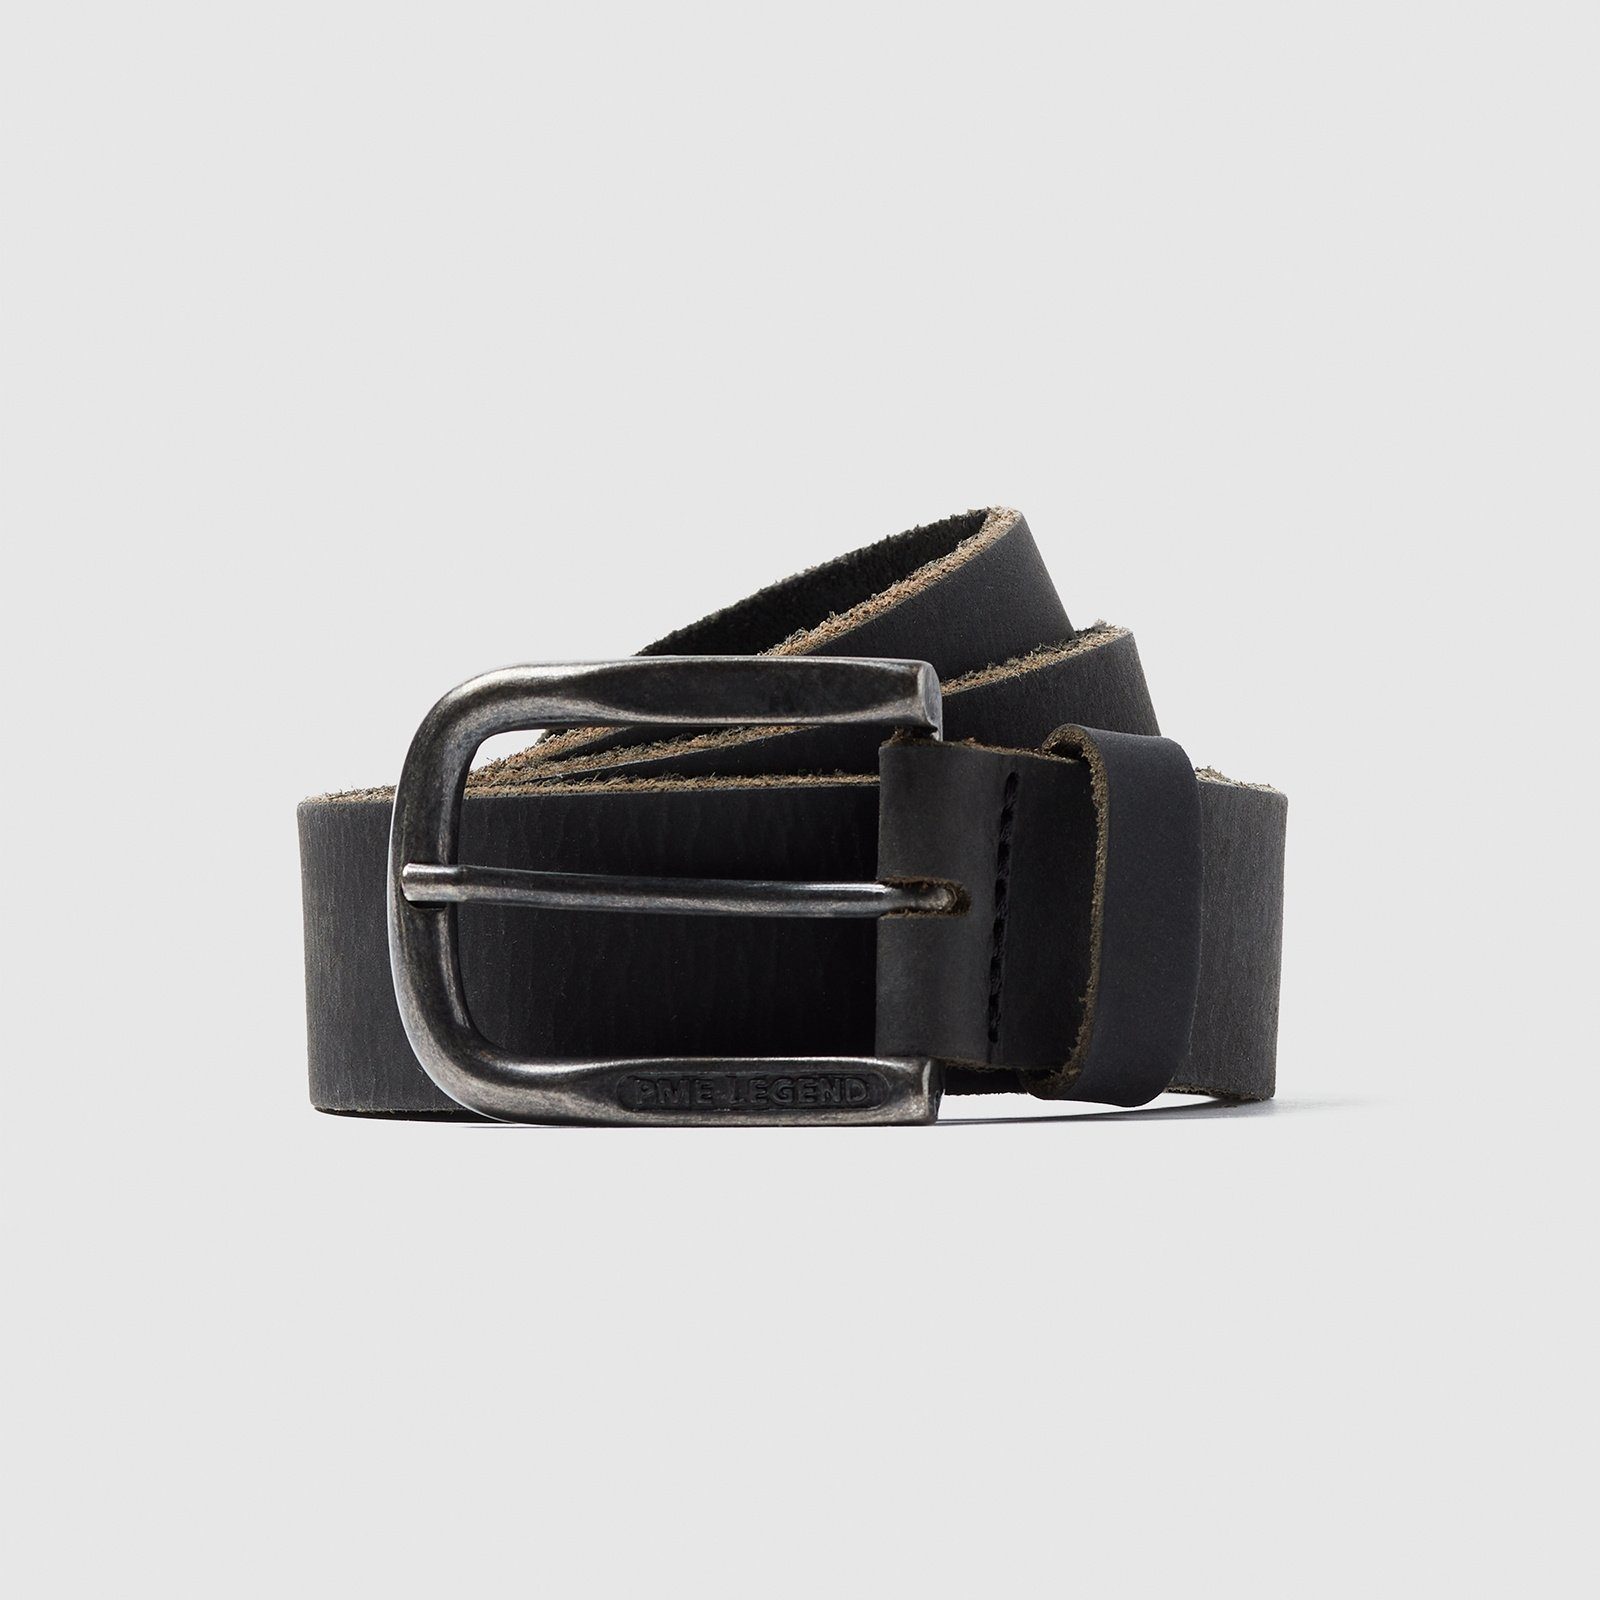 PME LEGEND Ledergürtel Belt Leather belt black